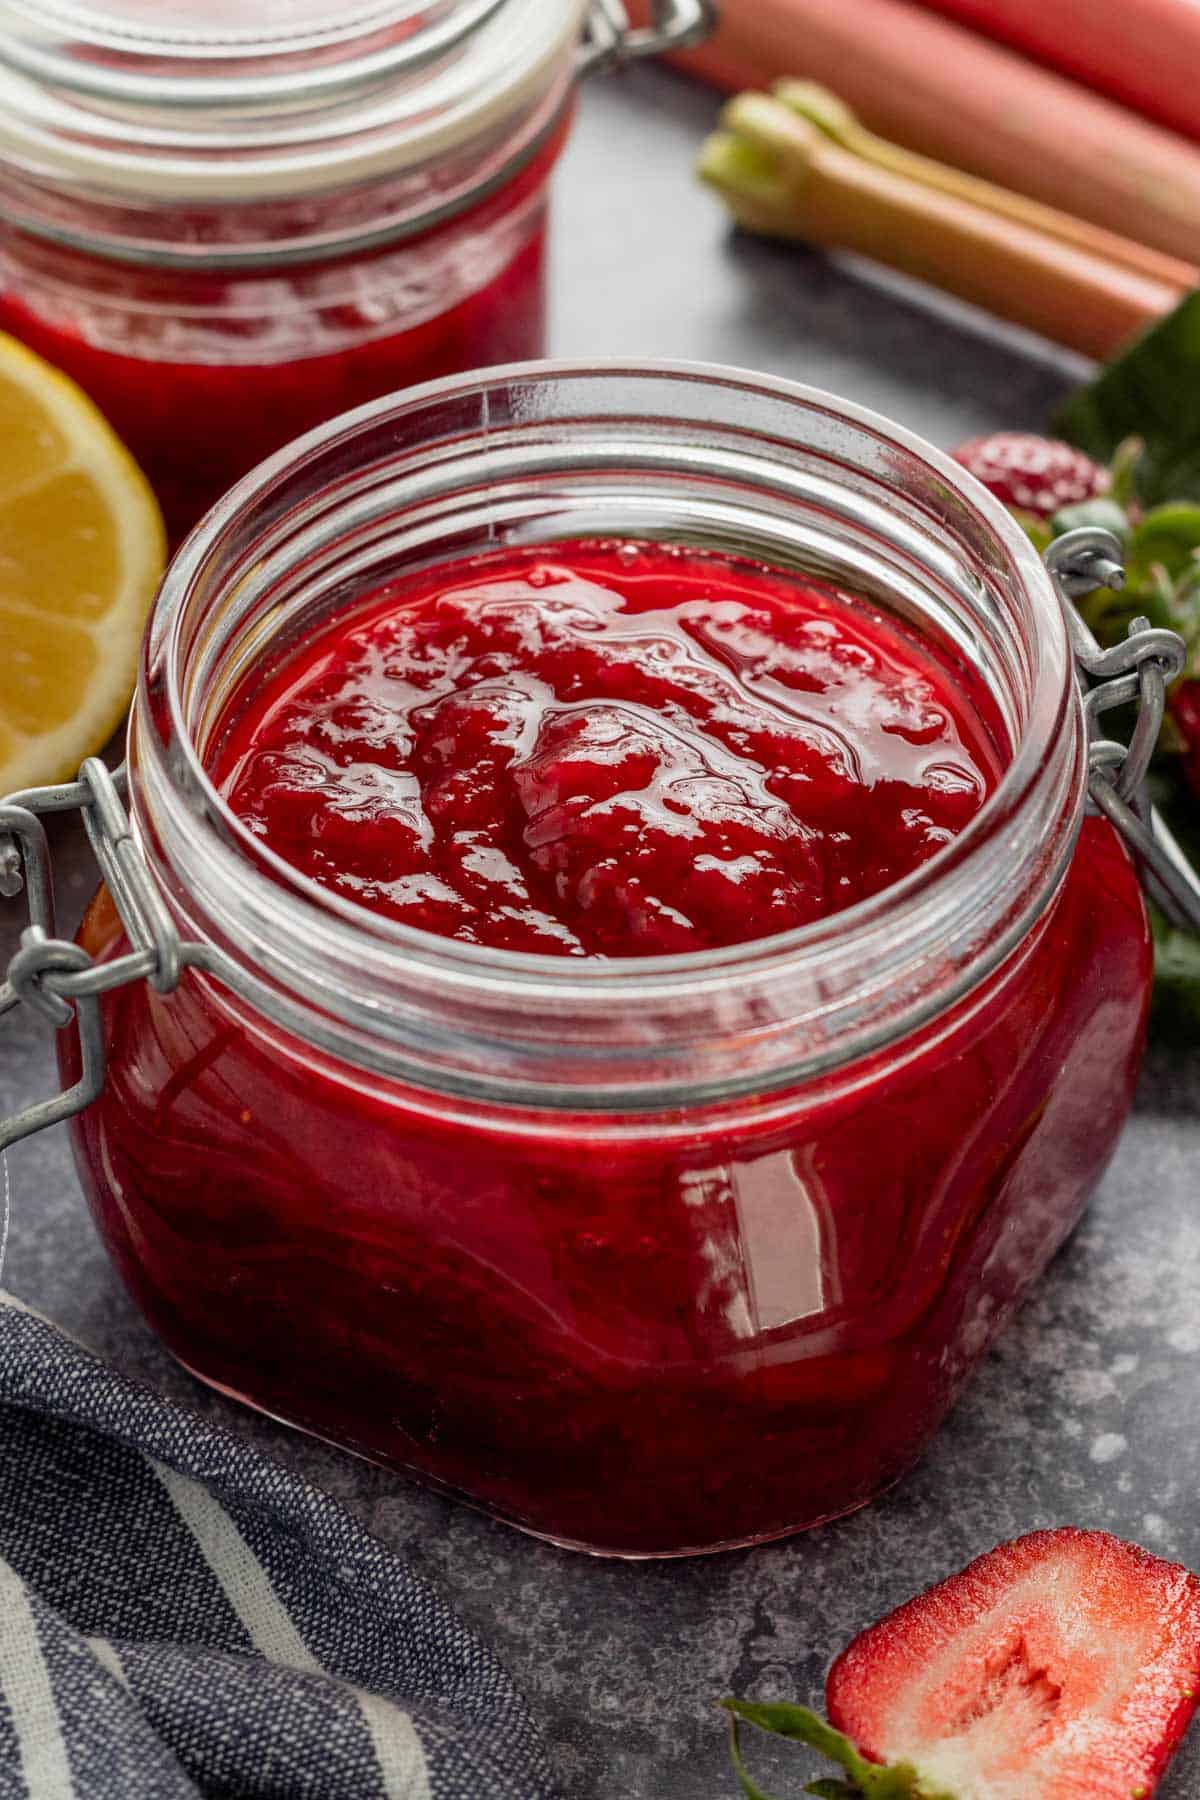 strawberry rhubarb jam in a jar